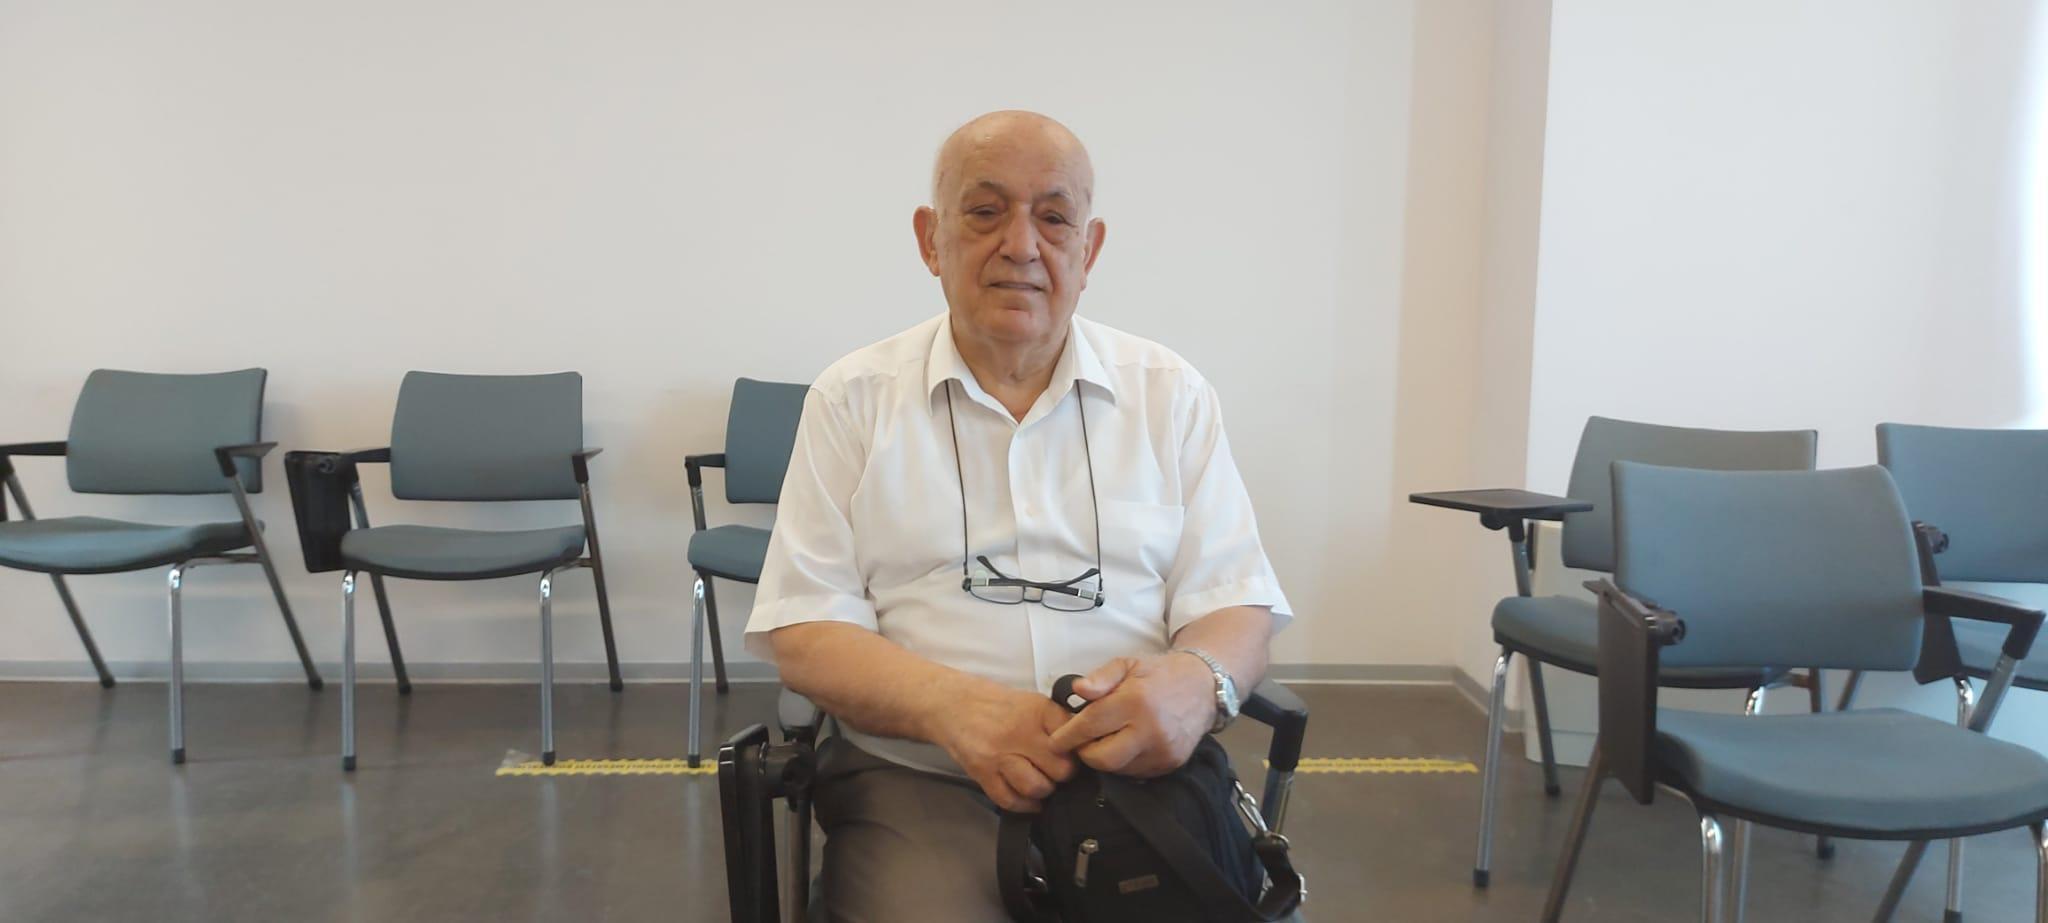 74ünde Osmanlıca öğrenen emekli öğretmenin hedefi tarih doktorası